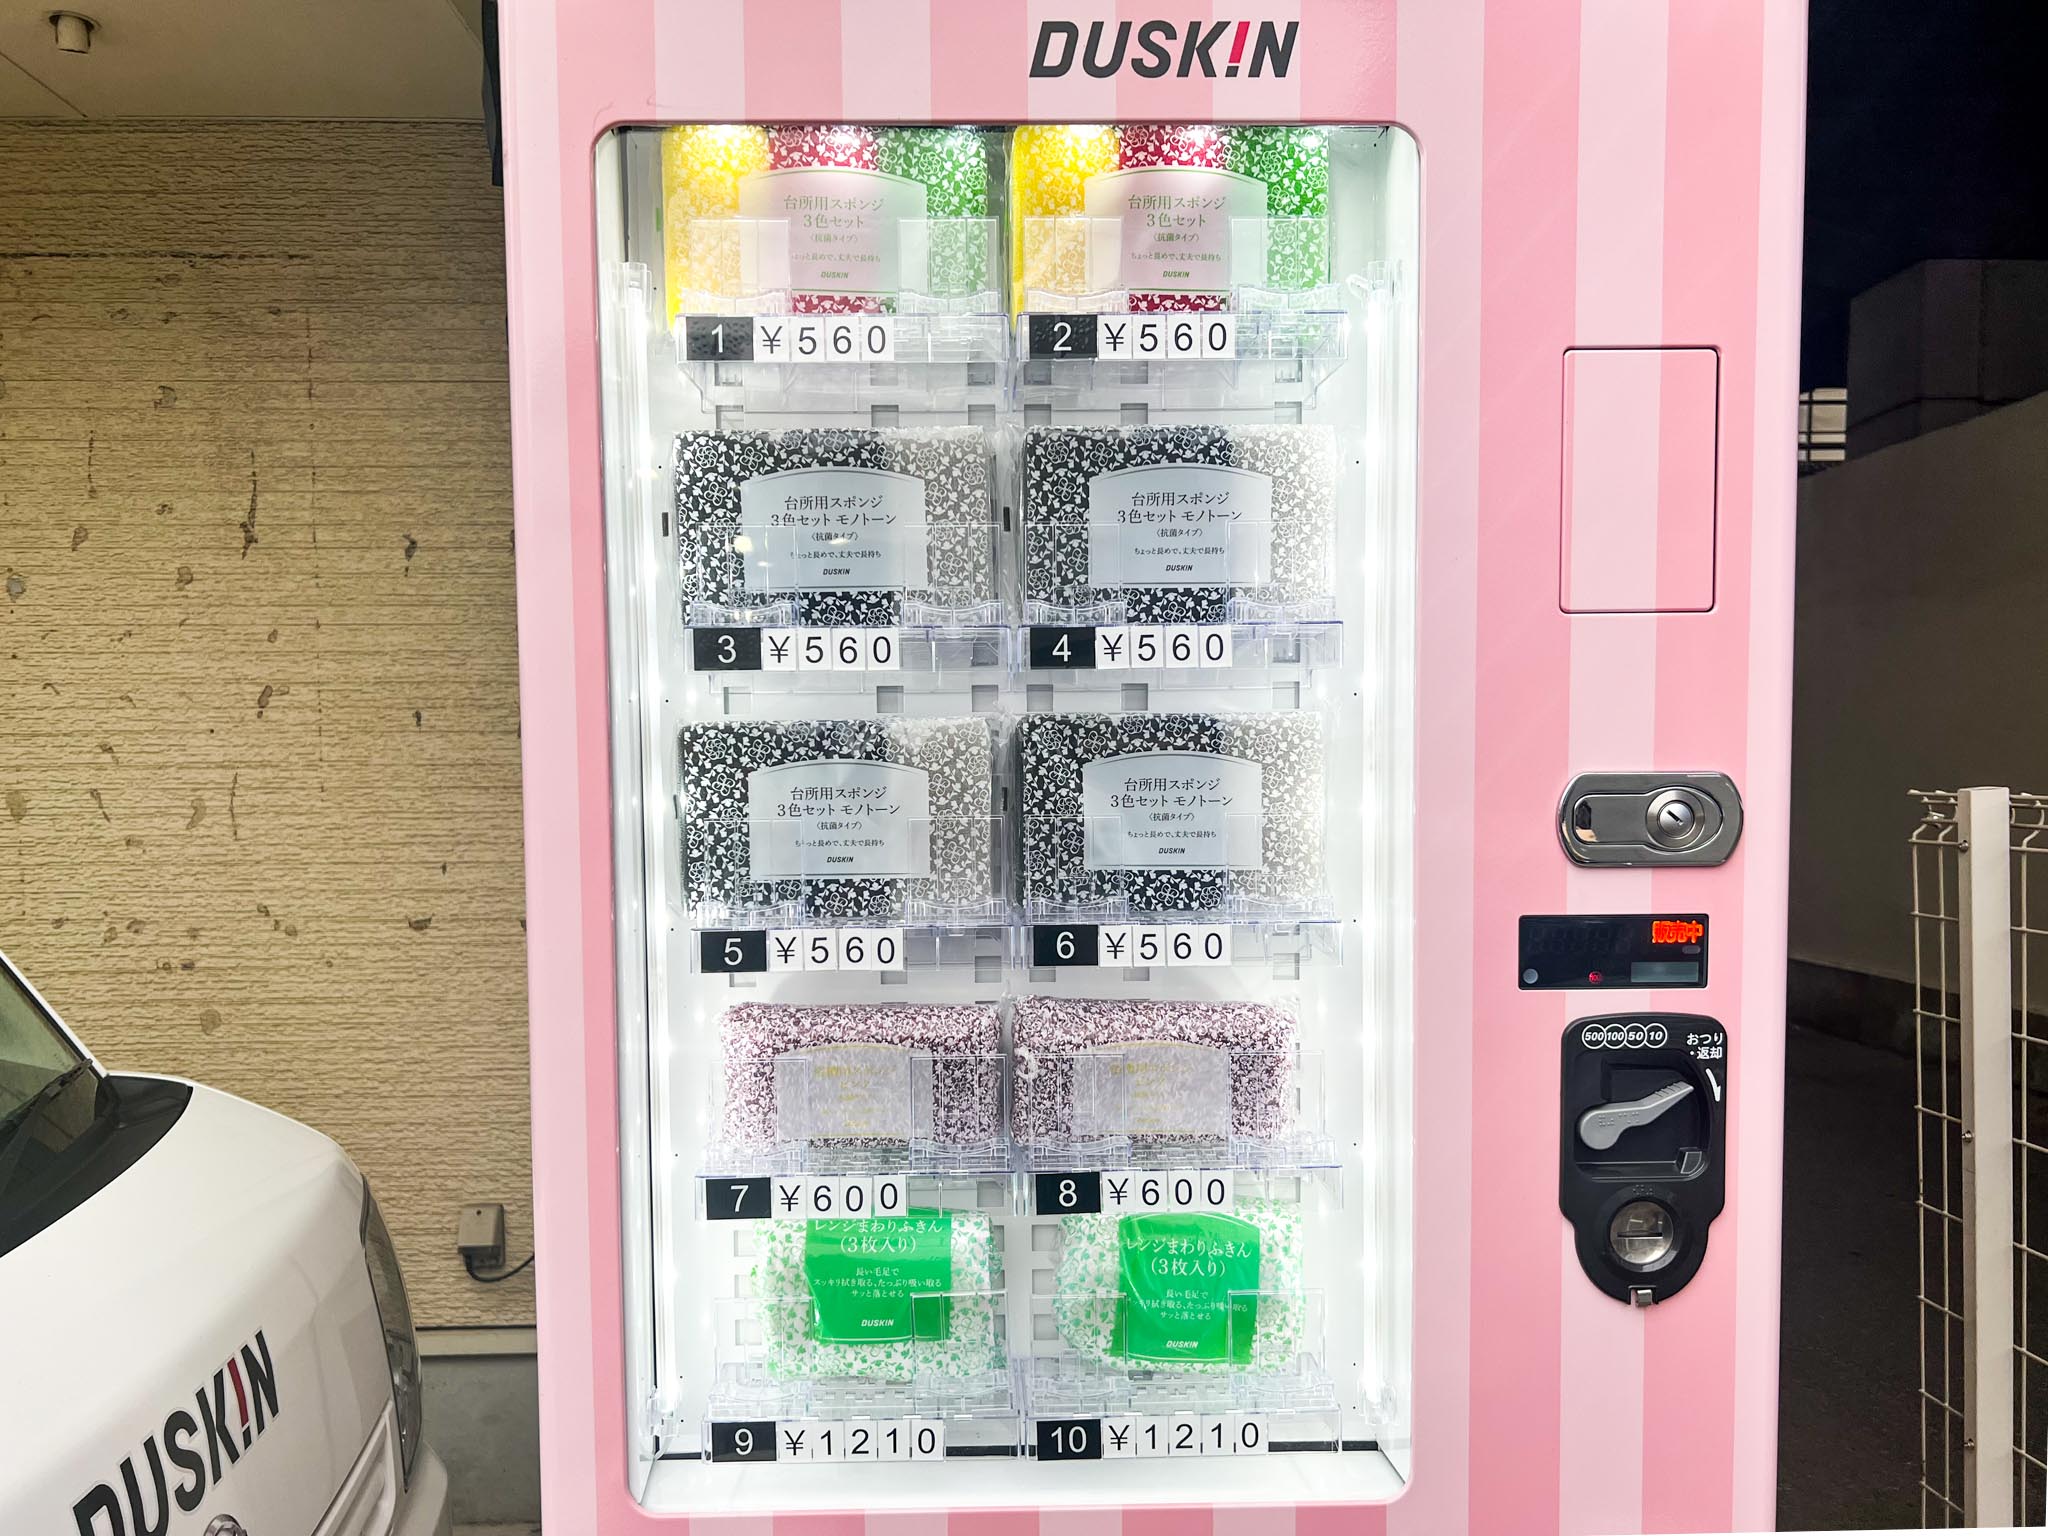 ダスキン自動販売機